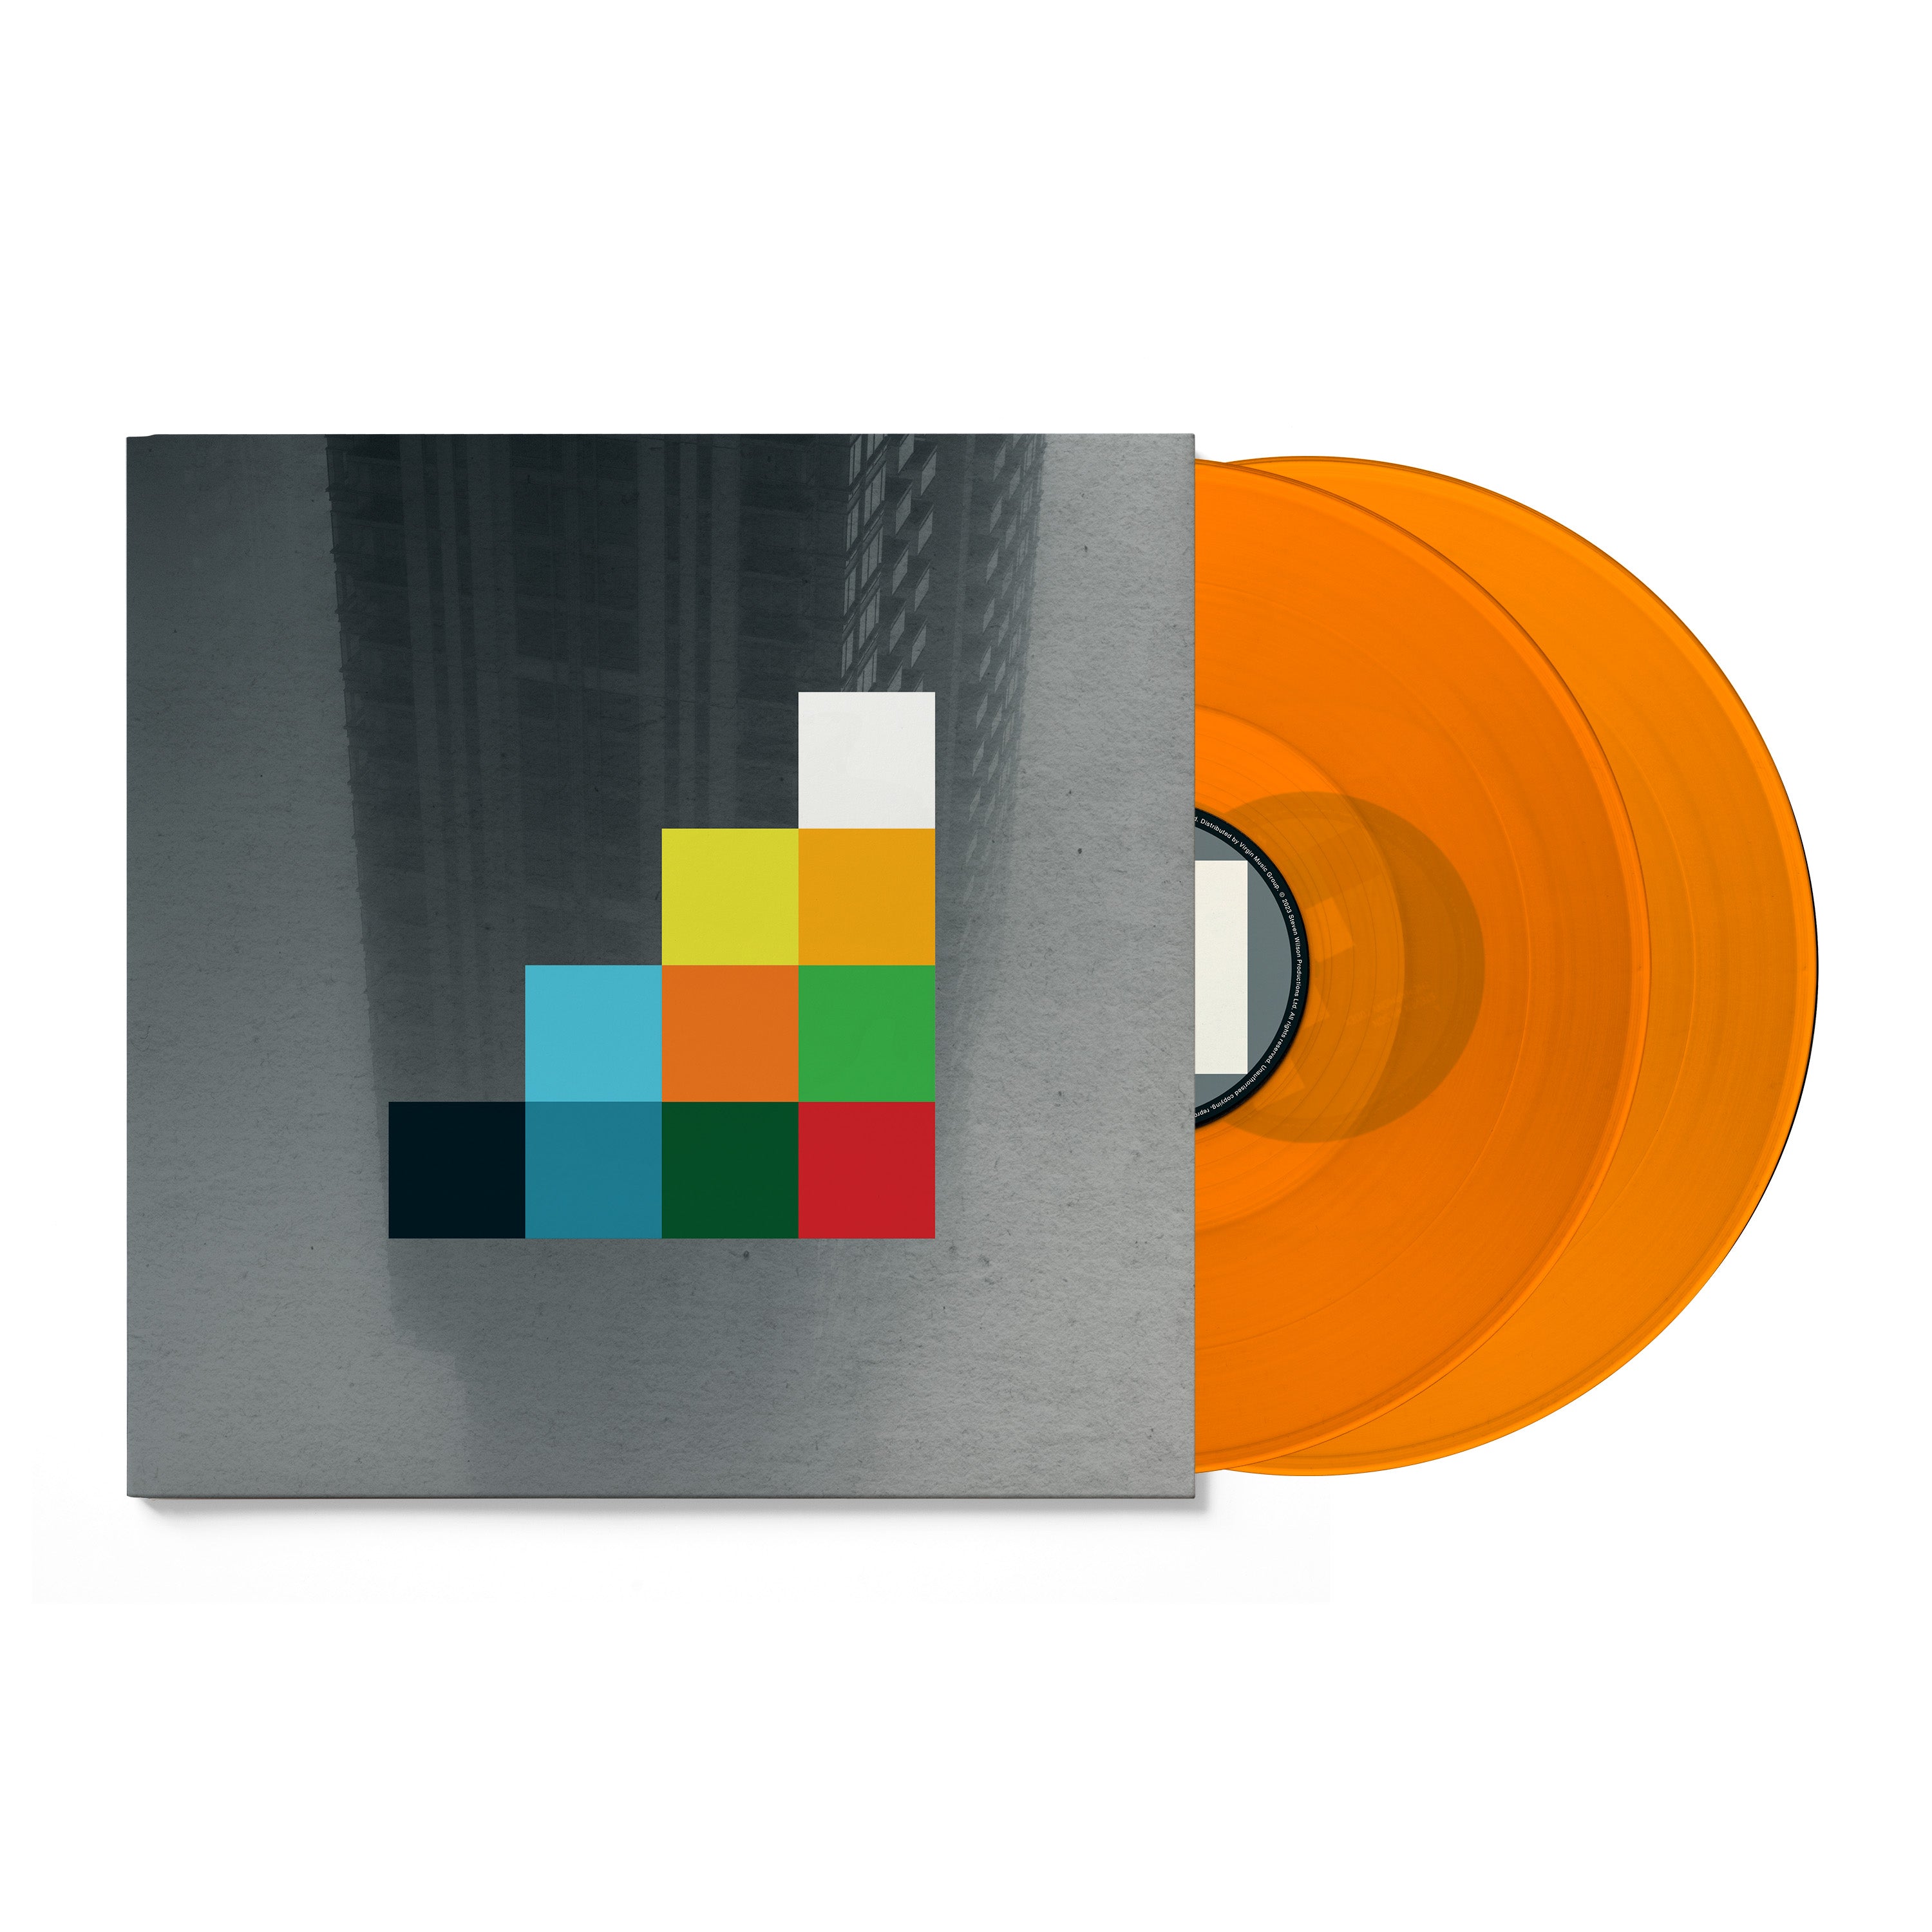 The Harmony Codex: Limited Orange Vinyl 2LP + Exclusive Artwork Print